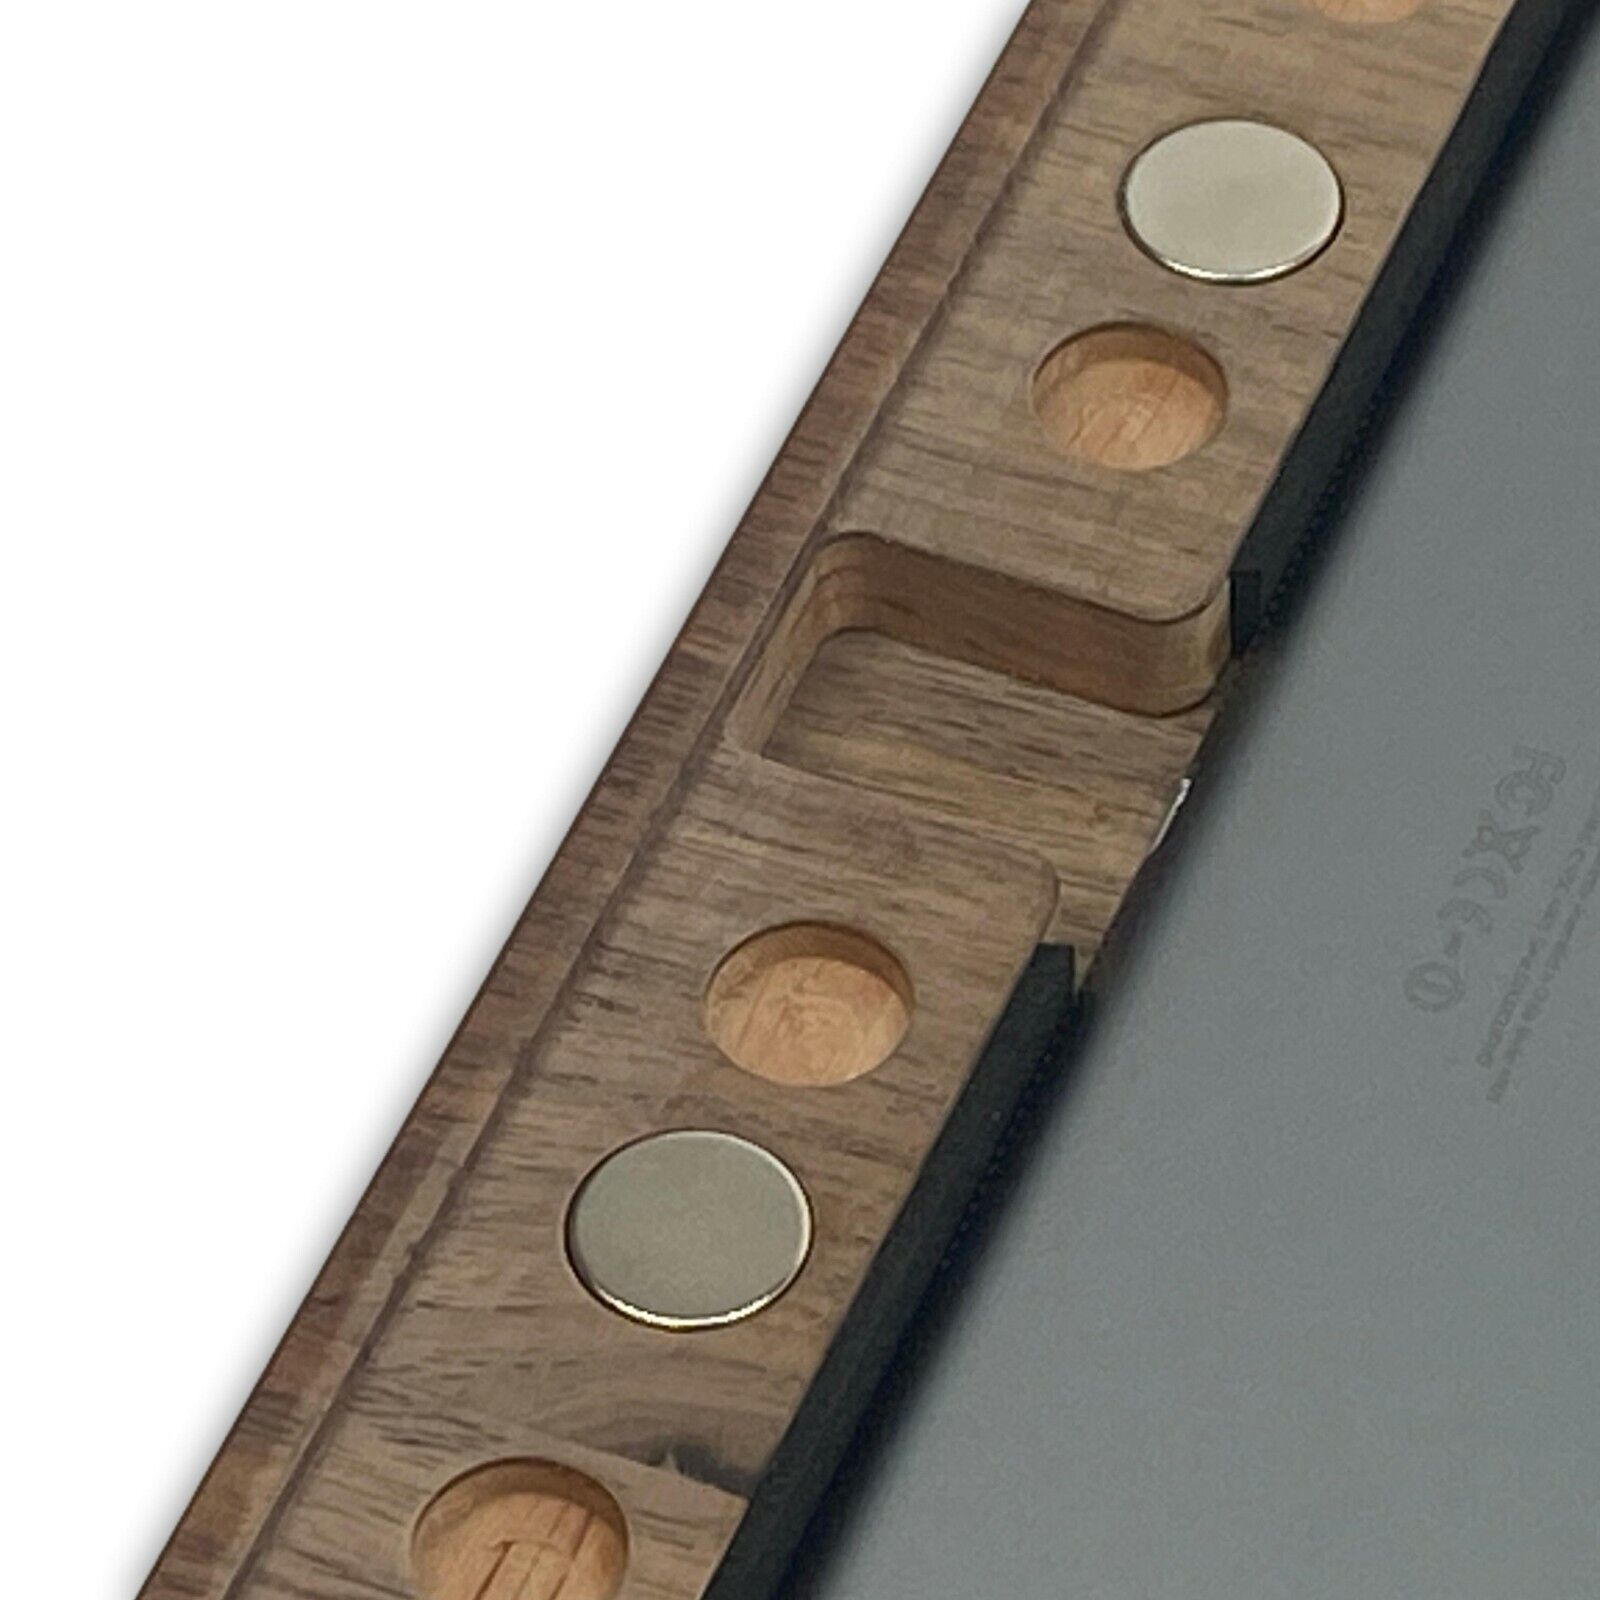 NobleFrames Design Smart Home Wandhalter für iPad Air1/2 | iPad 5/6 | Nussholz